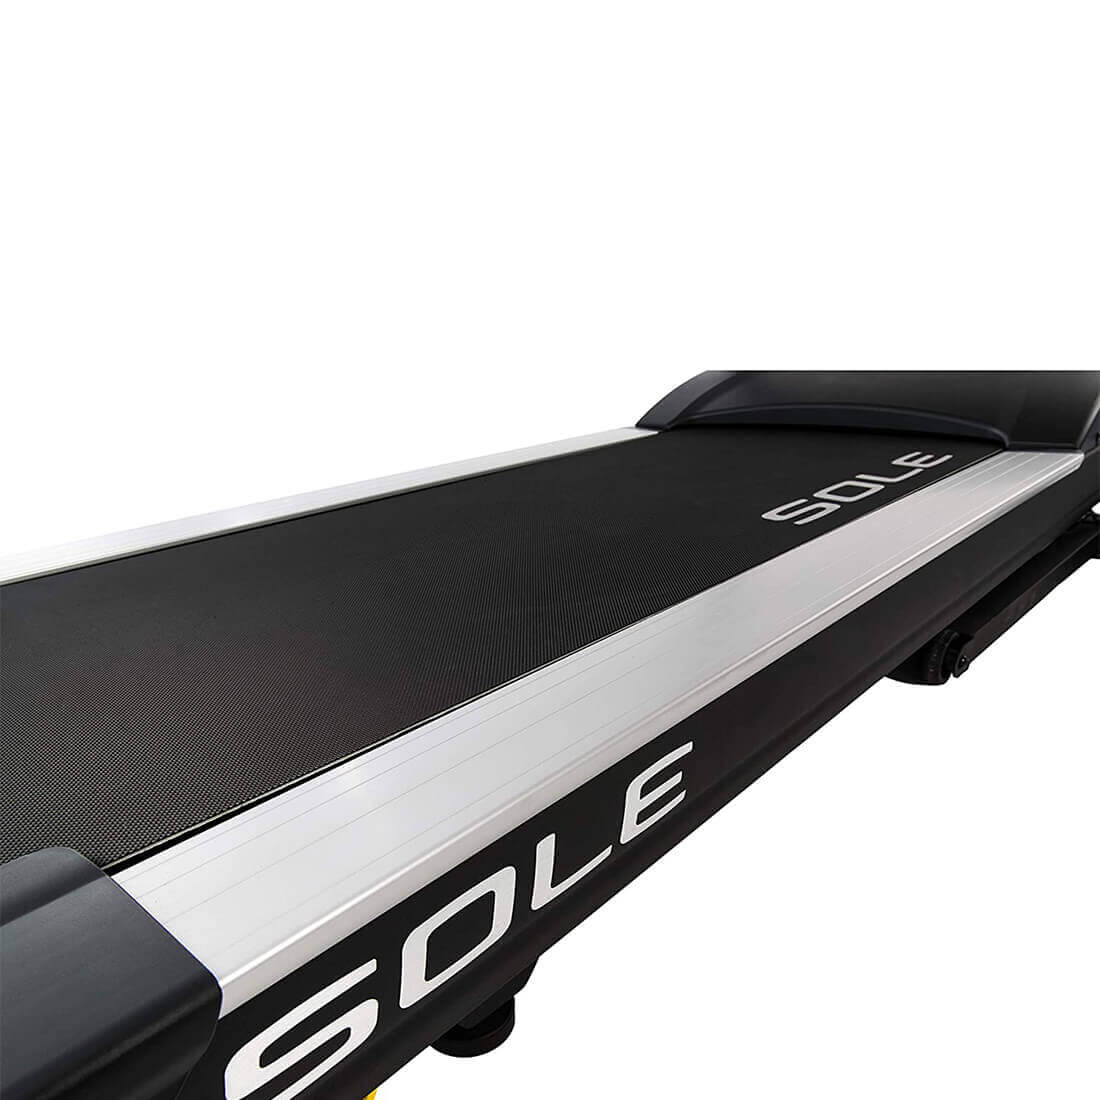 TD80 sole Desk Treadmill walking surface